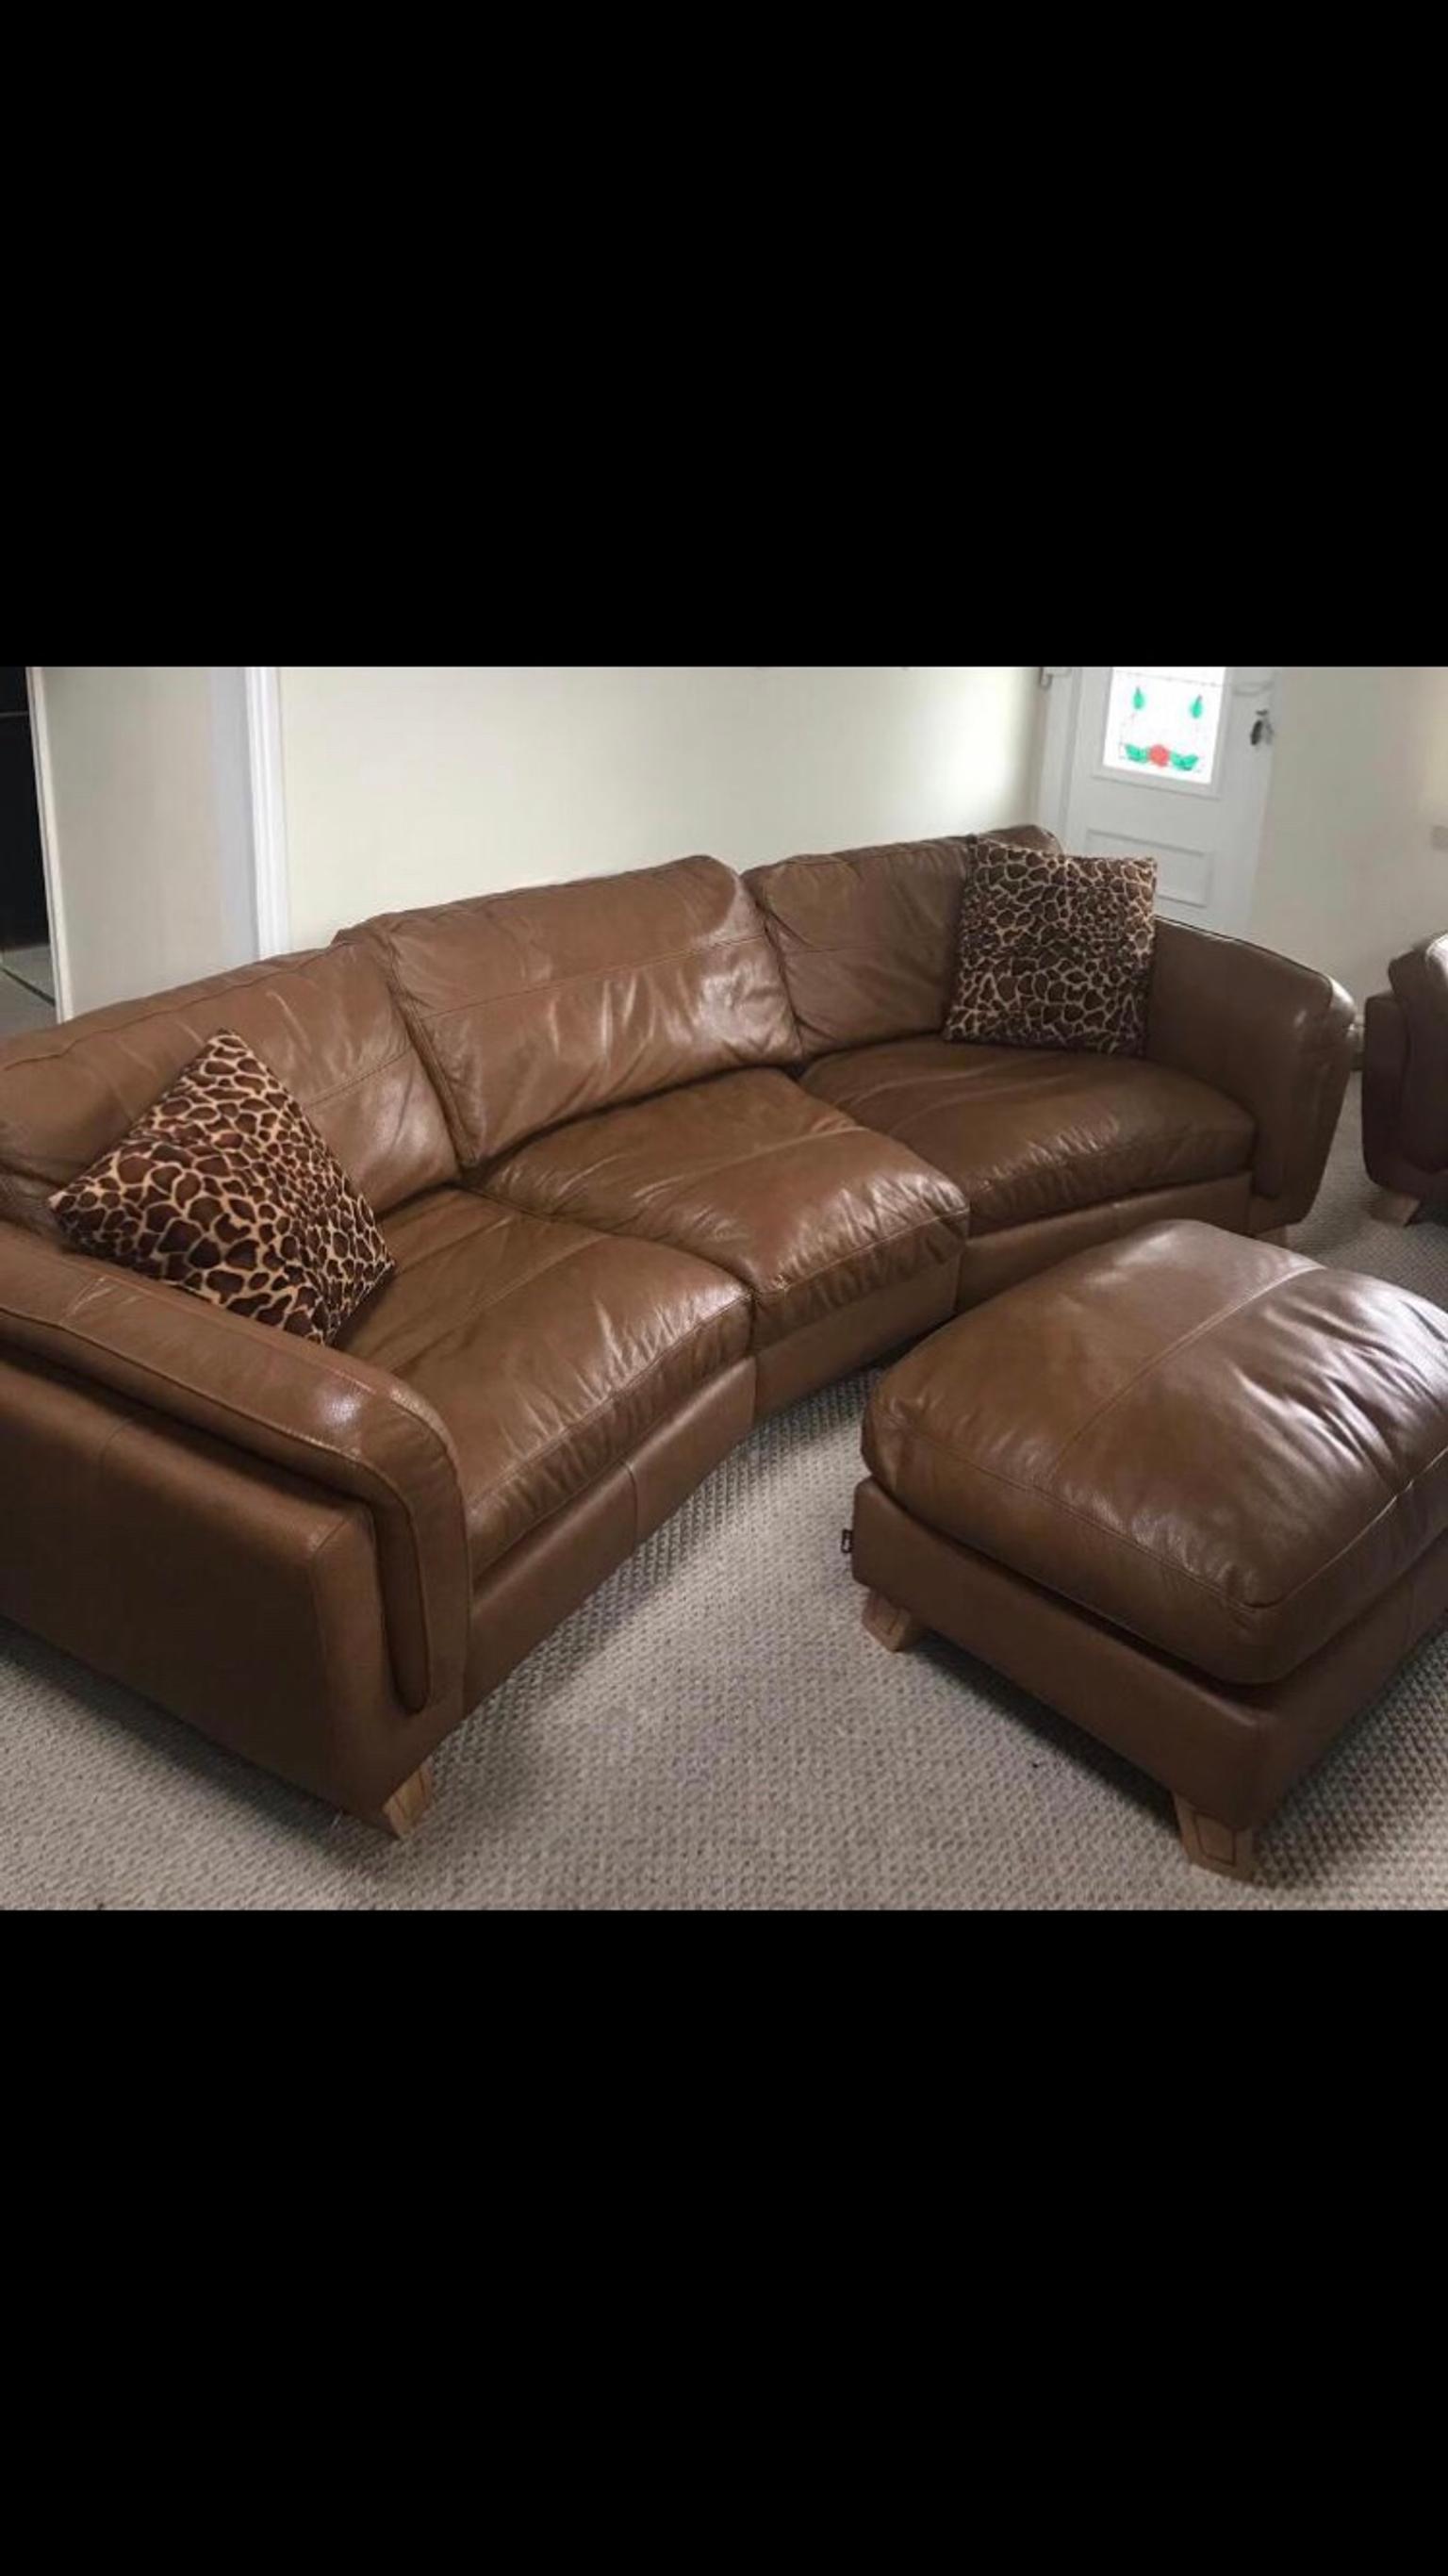 Sisi Italia Leather Sofa In B76 Birmingham Fur 1 250 00 Zum